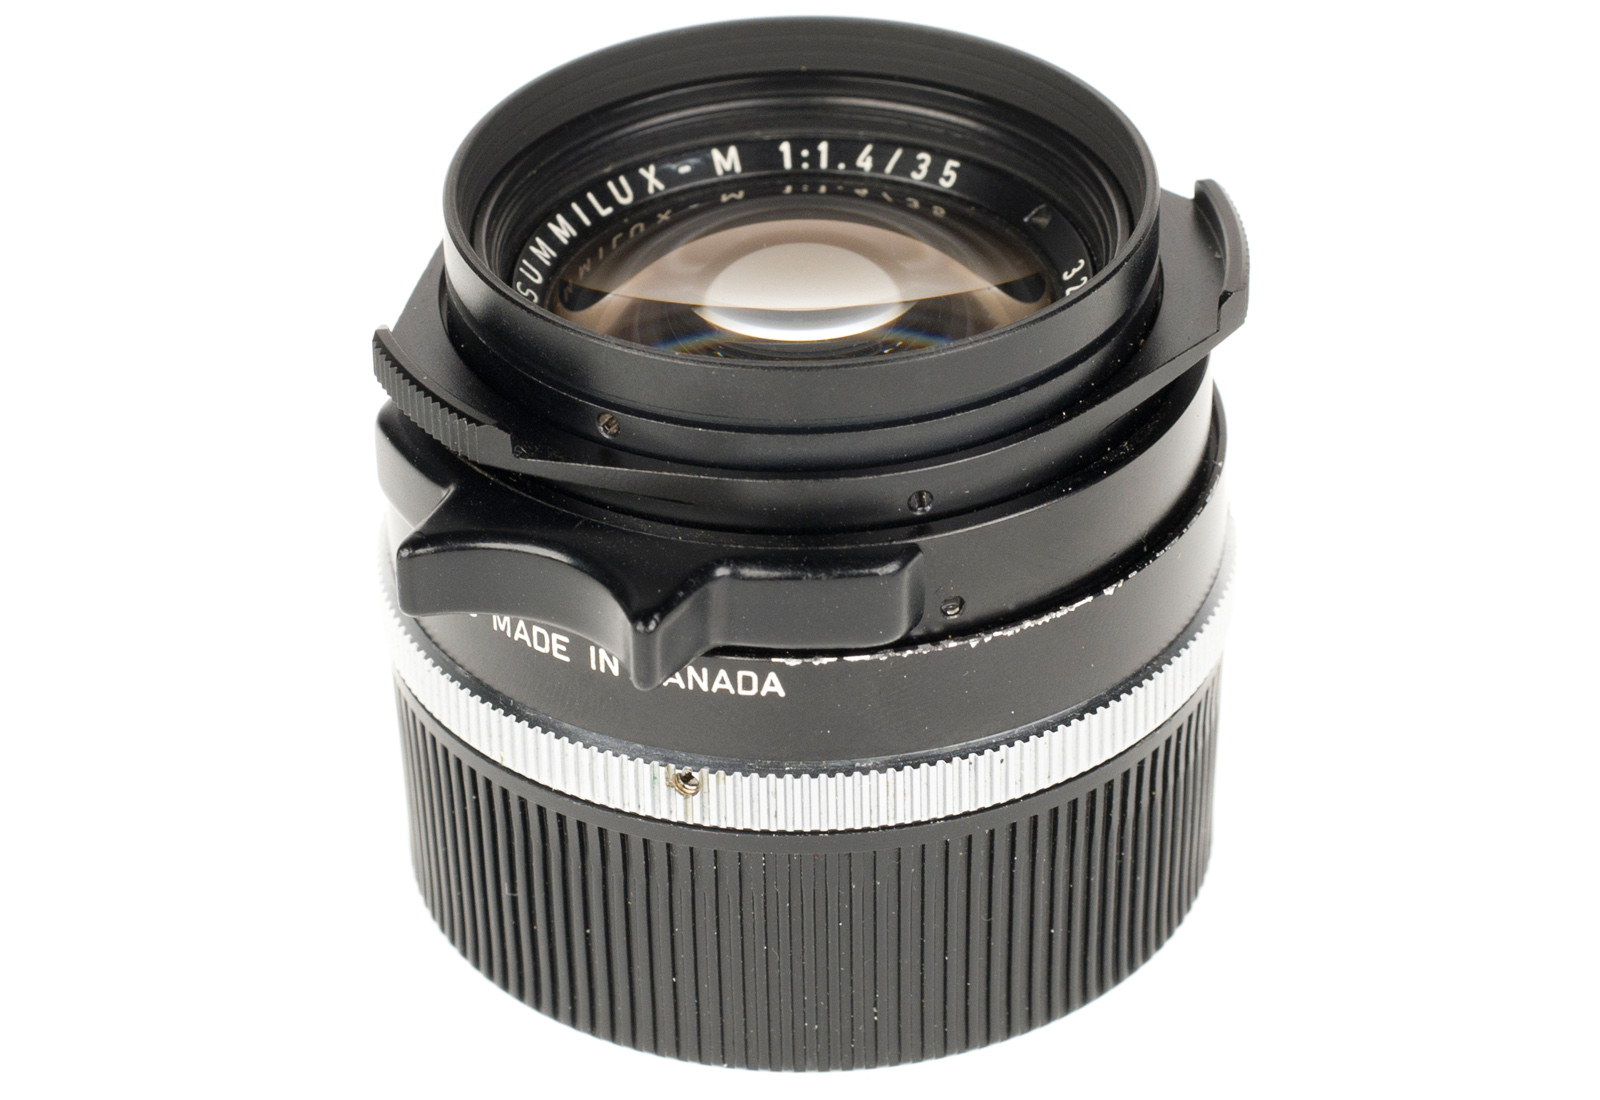 Leica Summilux-M 1:1,4/35mm, black 11870